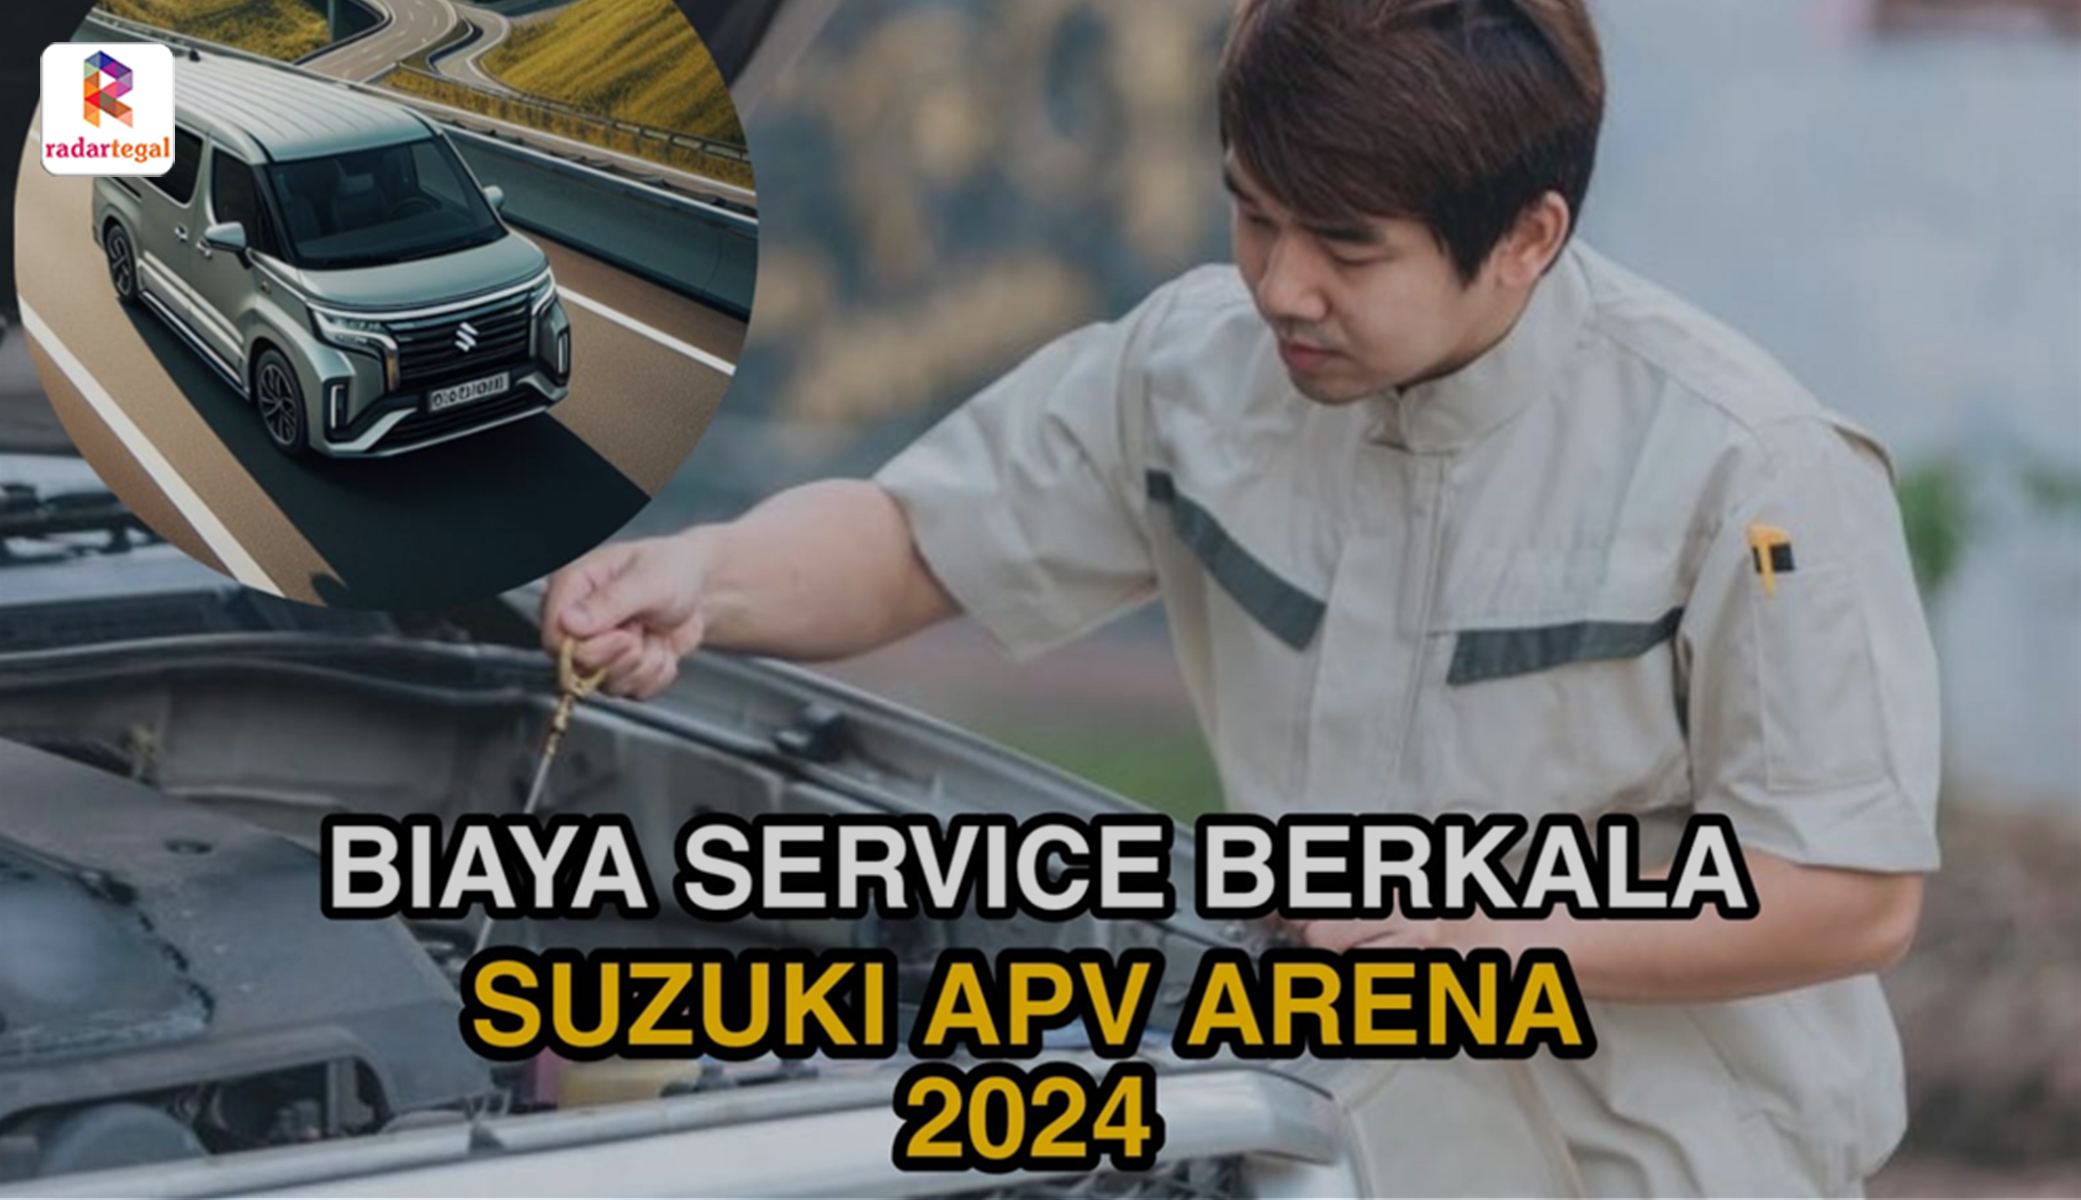 Ketahui Biaya Service Berkala Suzuki APV Arena 2024, Optimalkan Kendaranmu Sebelum Perjalanan Mudik